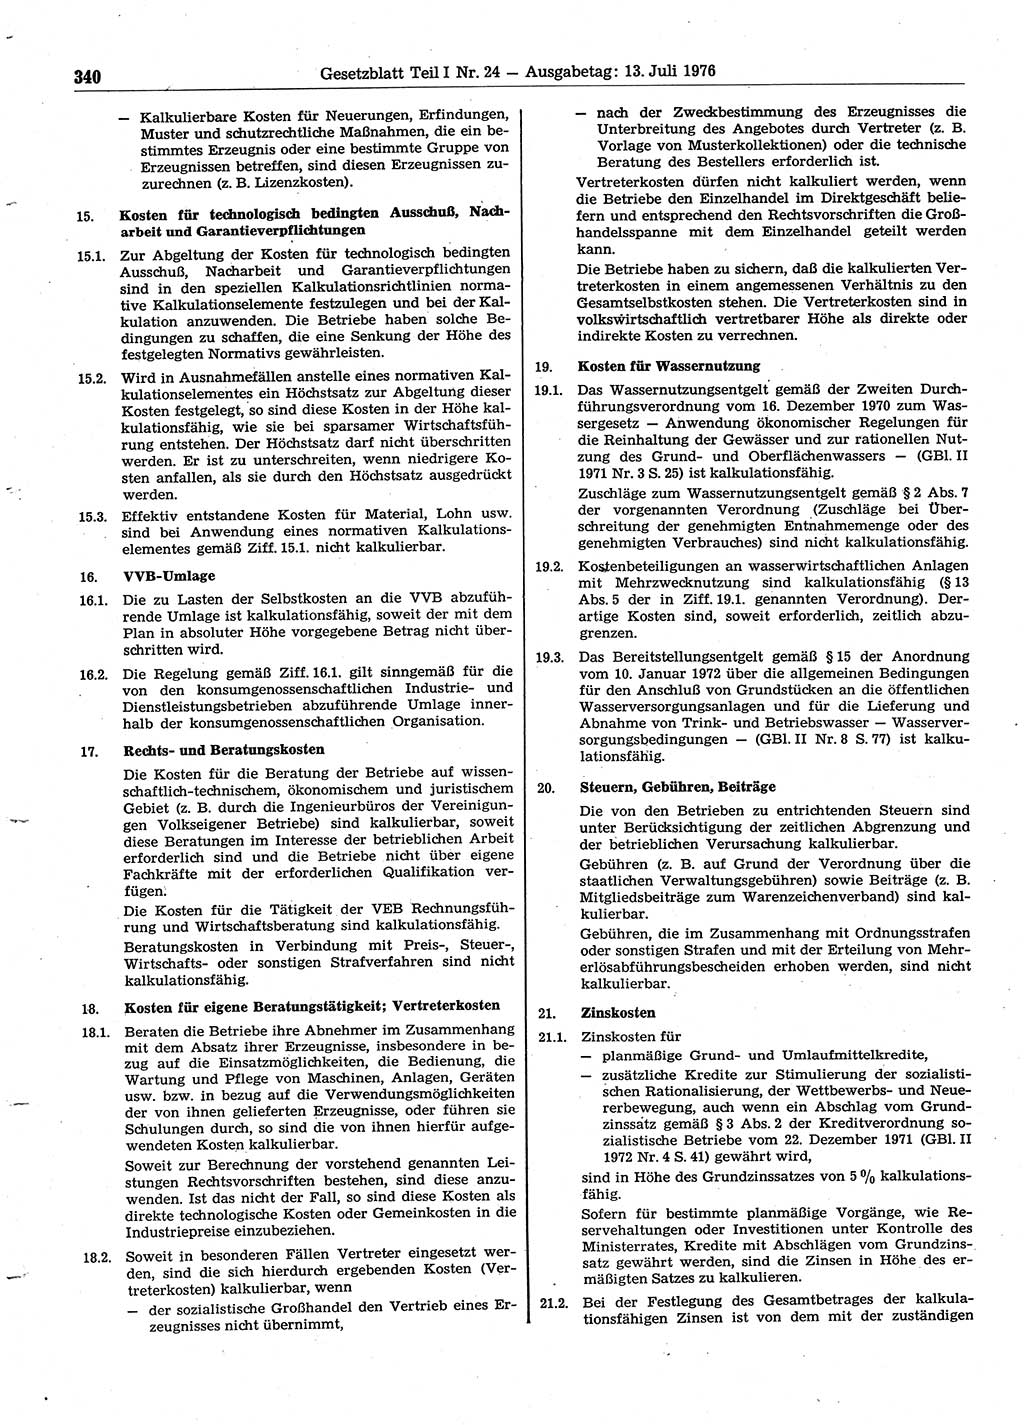 Gesetzblatt (GBl.) der Deutschen Demokratischen Republik (DDR) Teil Ⅰ 1976, Seite 340 (GBl. DDR Ⅰ 1976, S. 340)